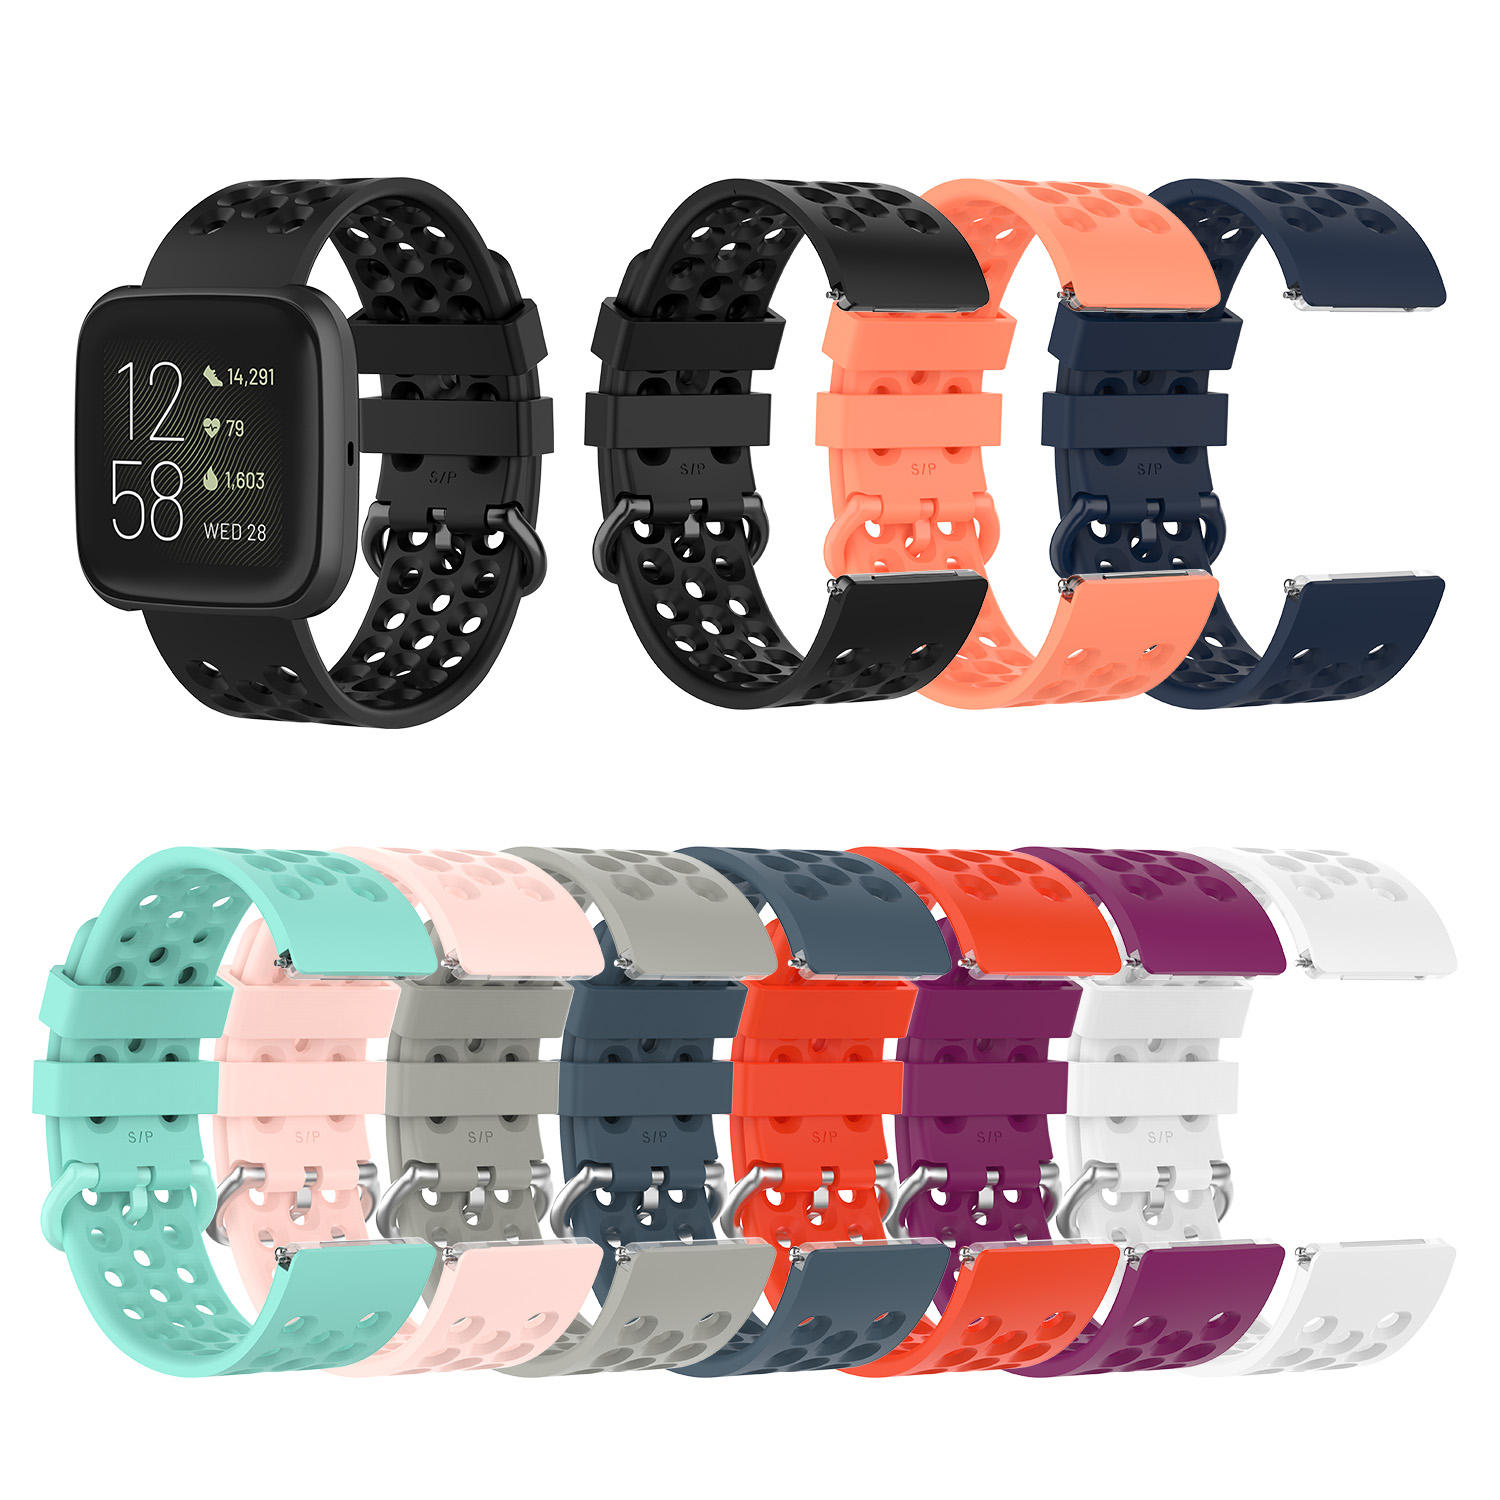 

Bakeey 23mm Watch Стандарты Ремешок для Fitbit Versa 2 с головкой Fit Fit Бесшовные спортивные смарт-часы